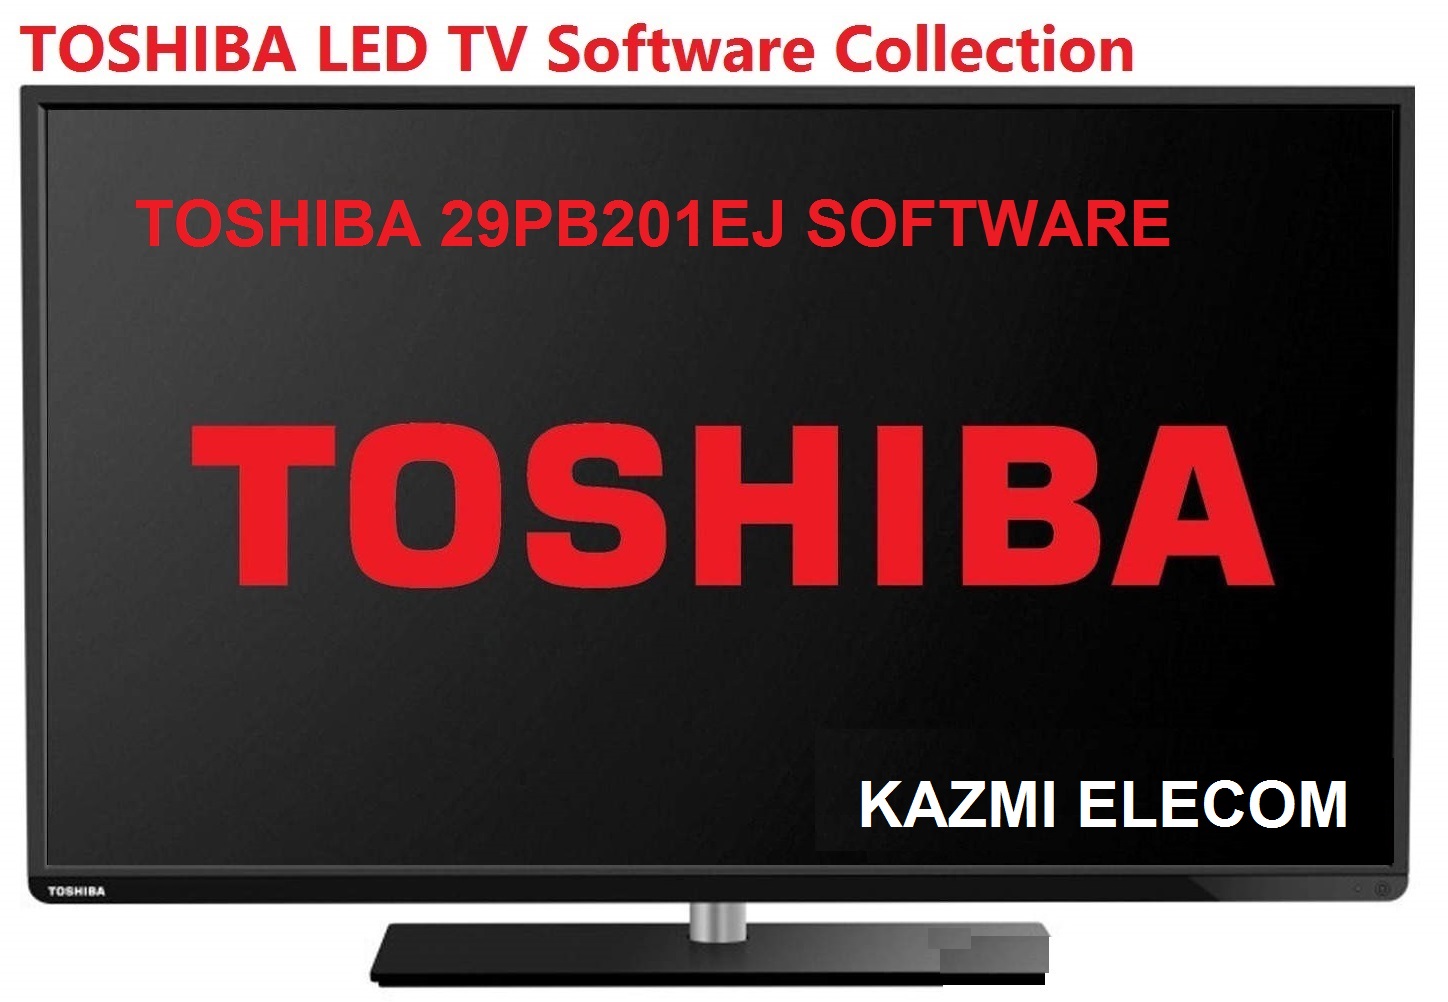 Toshiba 29Pb201Ej